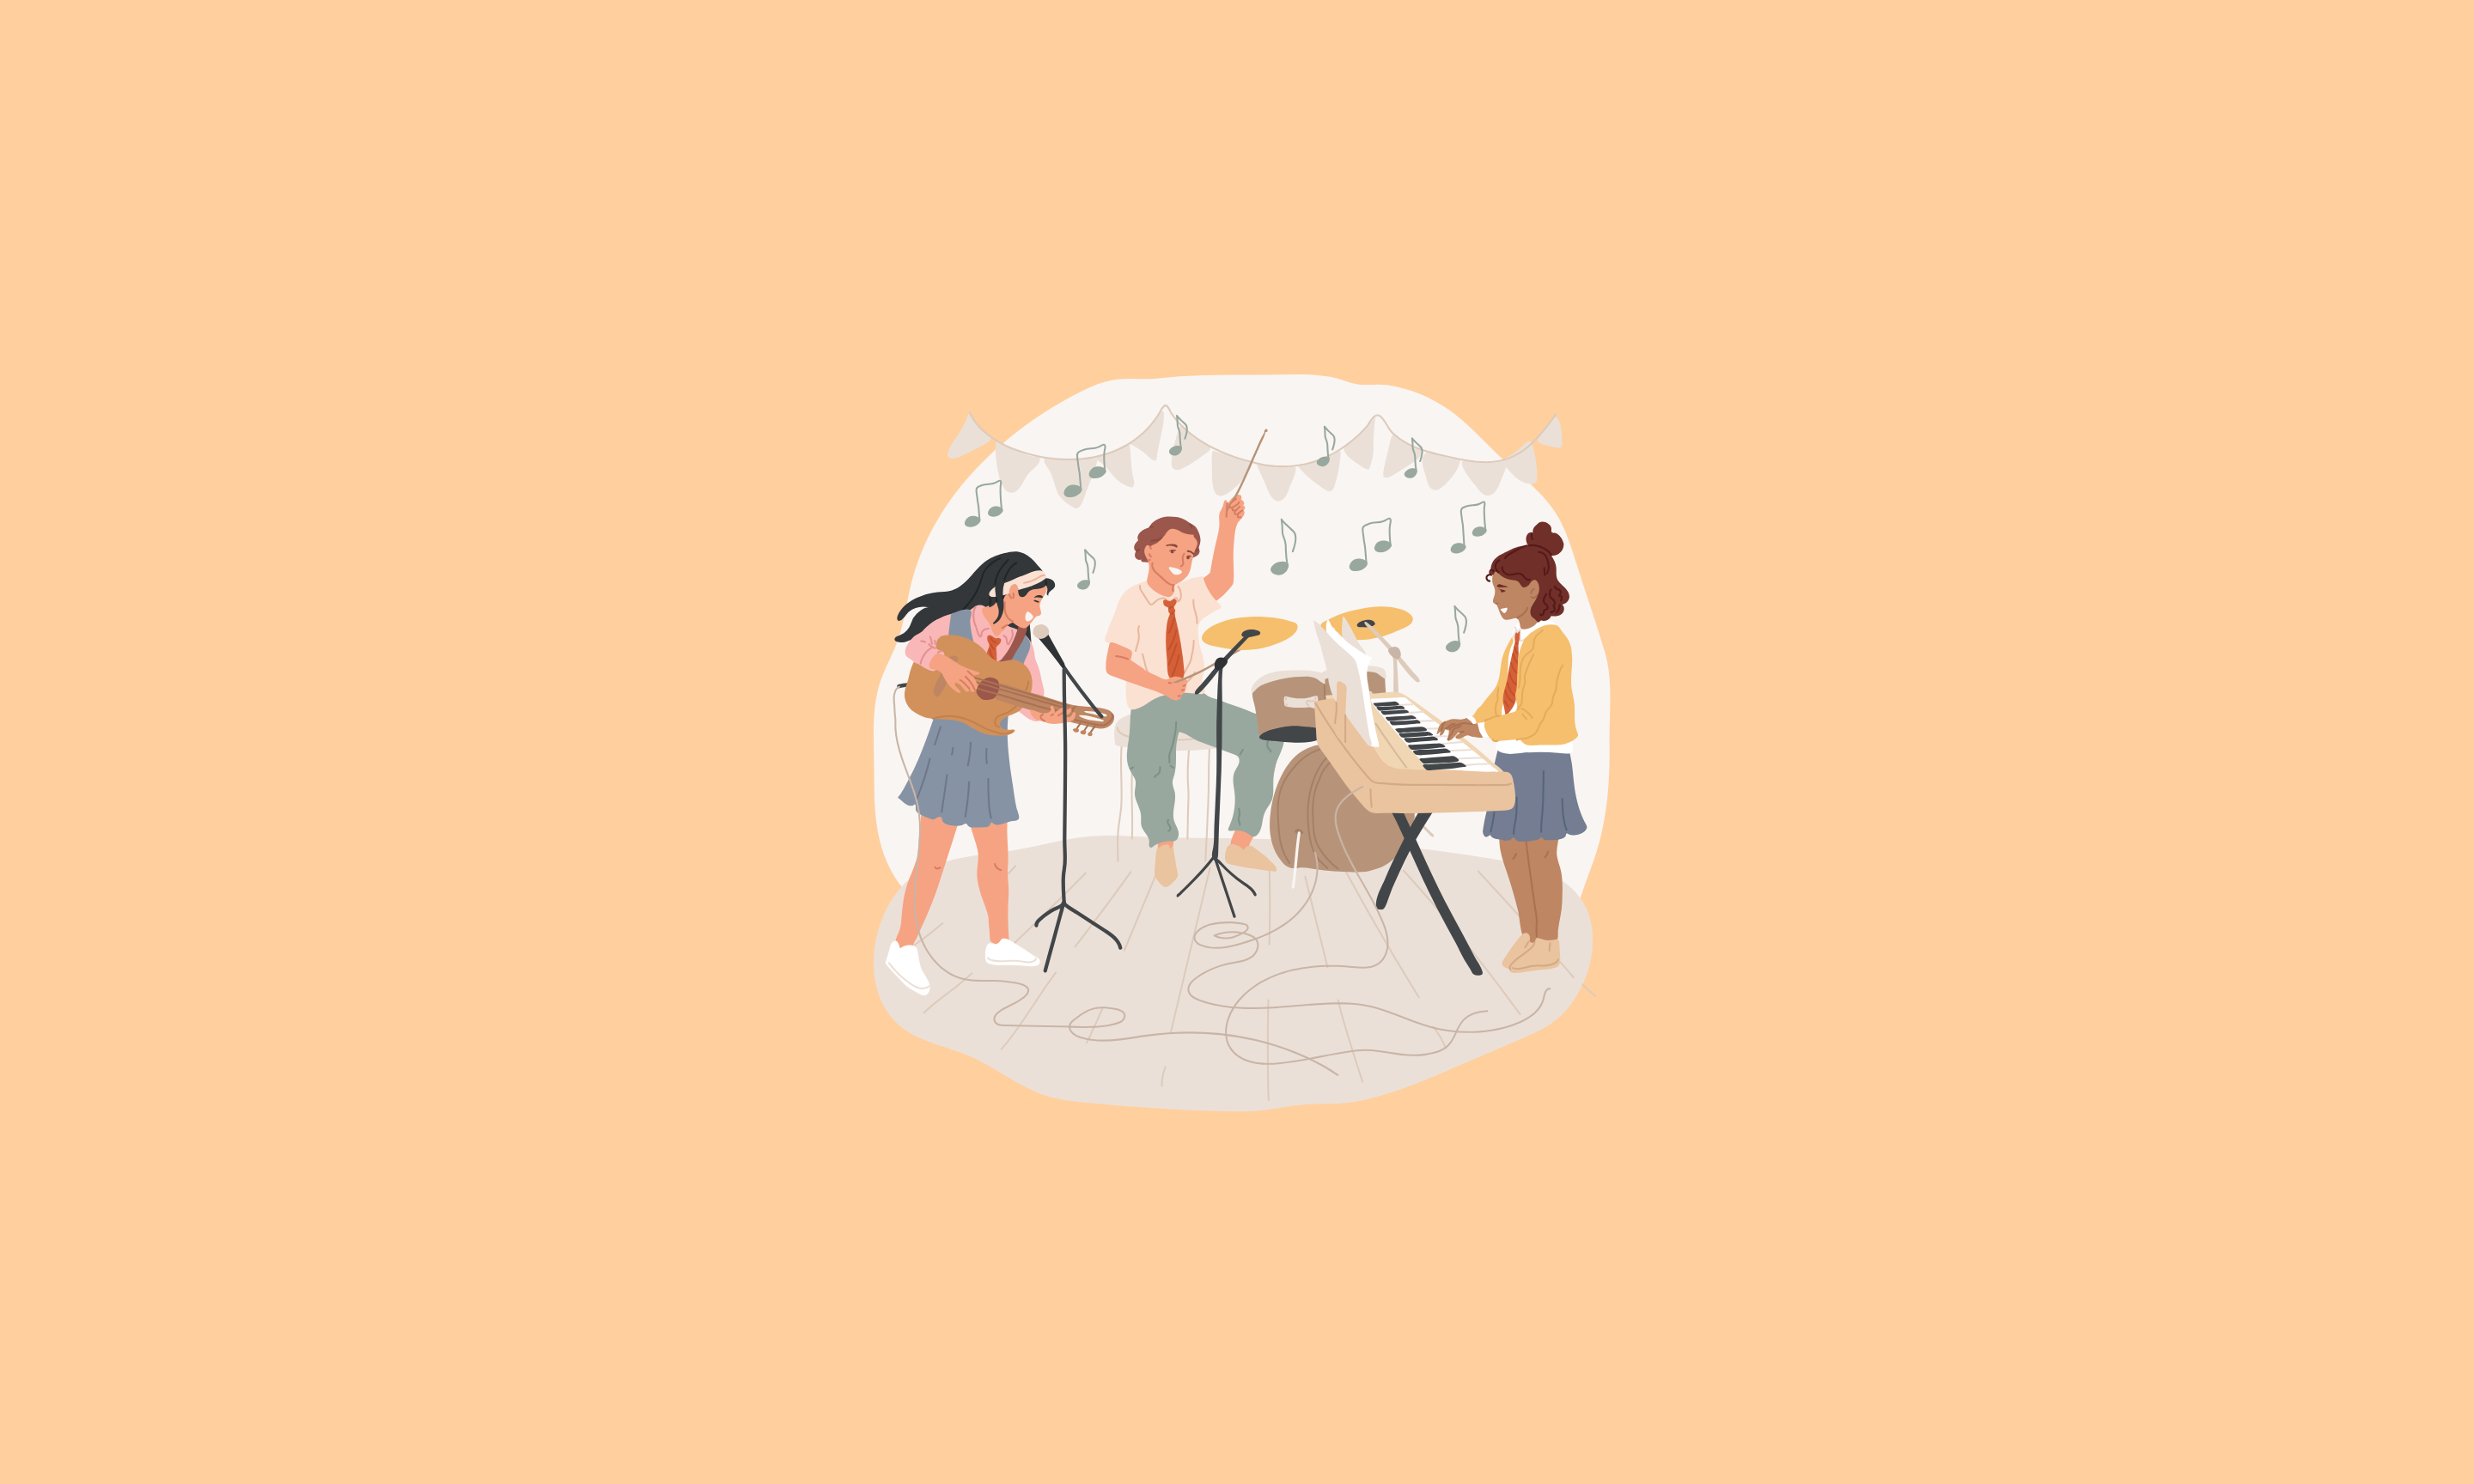 Rysunek przedstawia zespół muzyczny - trzy osoby grają na instrumentach i śpiewają